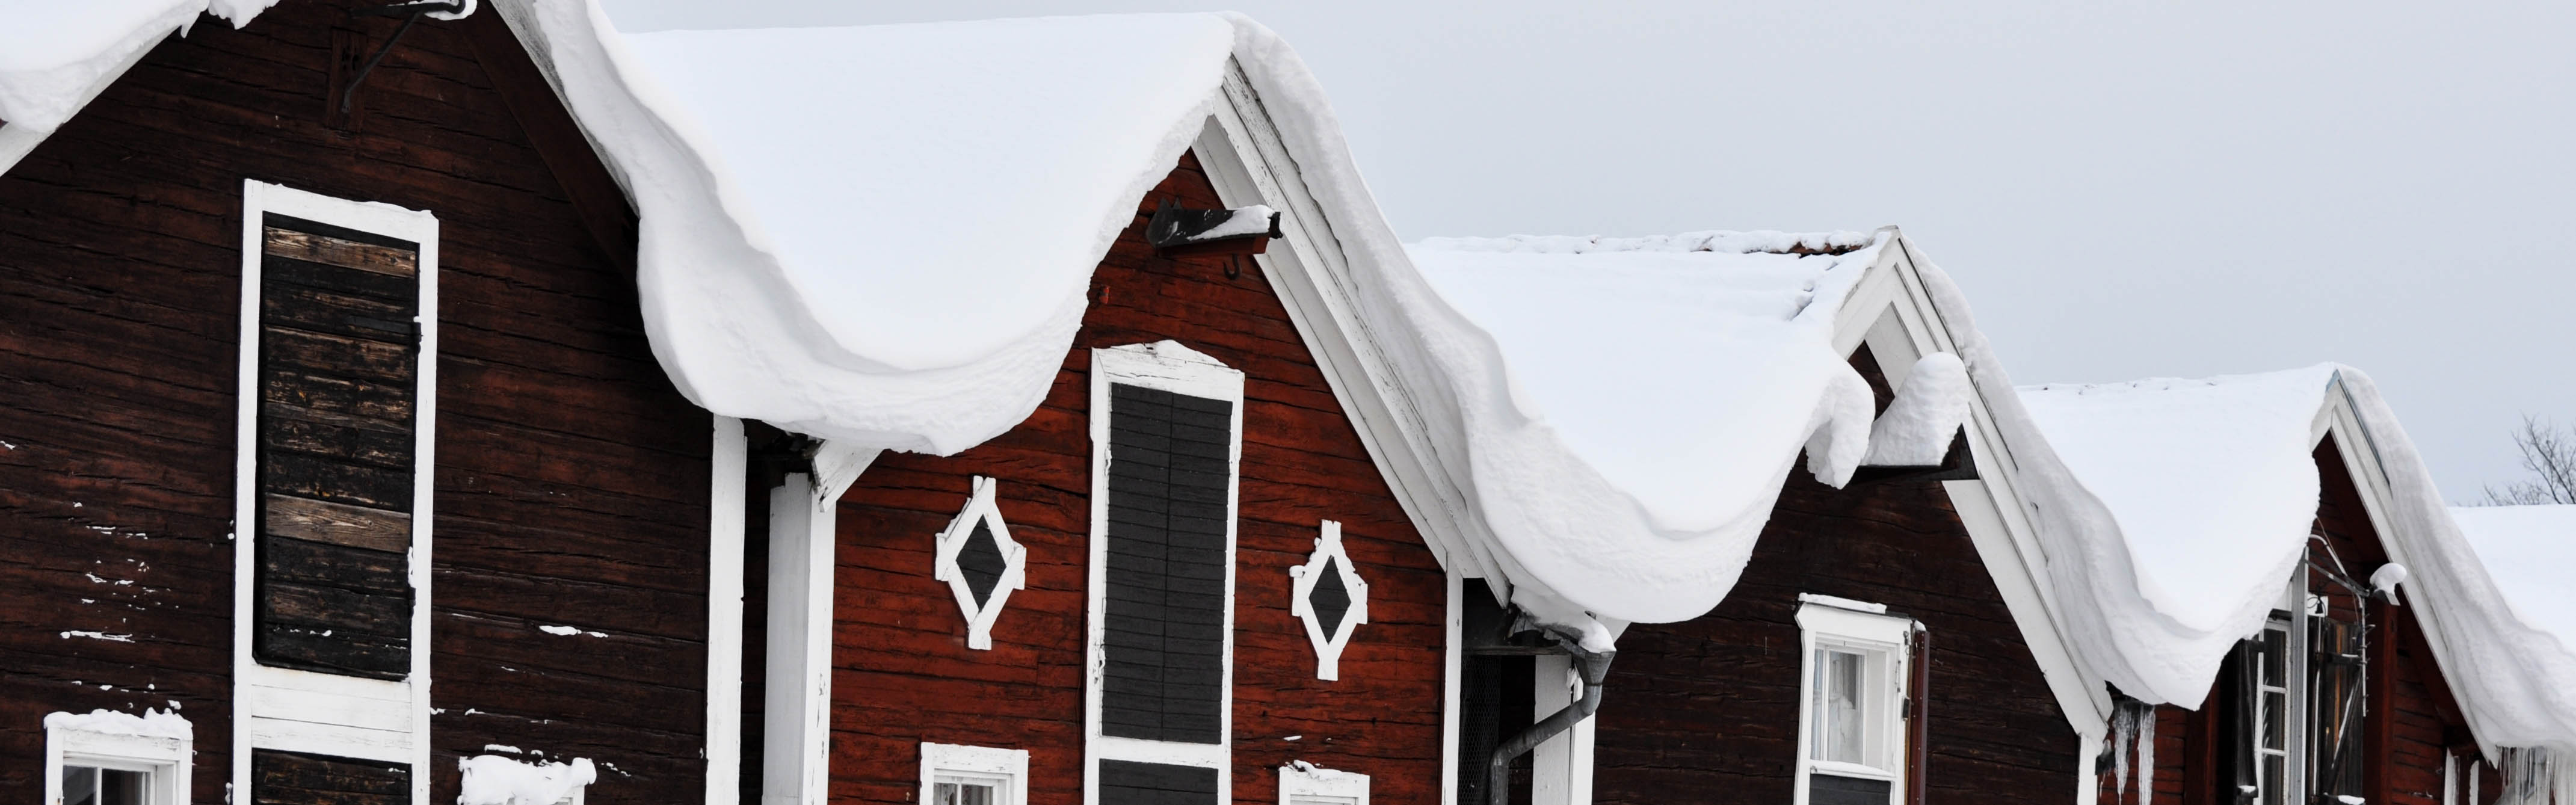 Sjöbodarna i Hudiksvall i vinterskrud